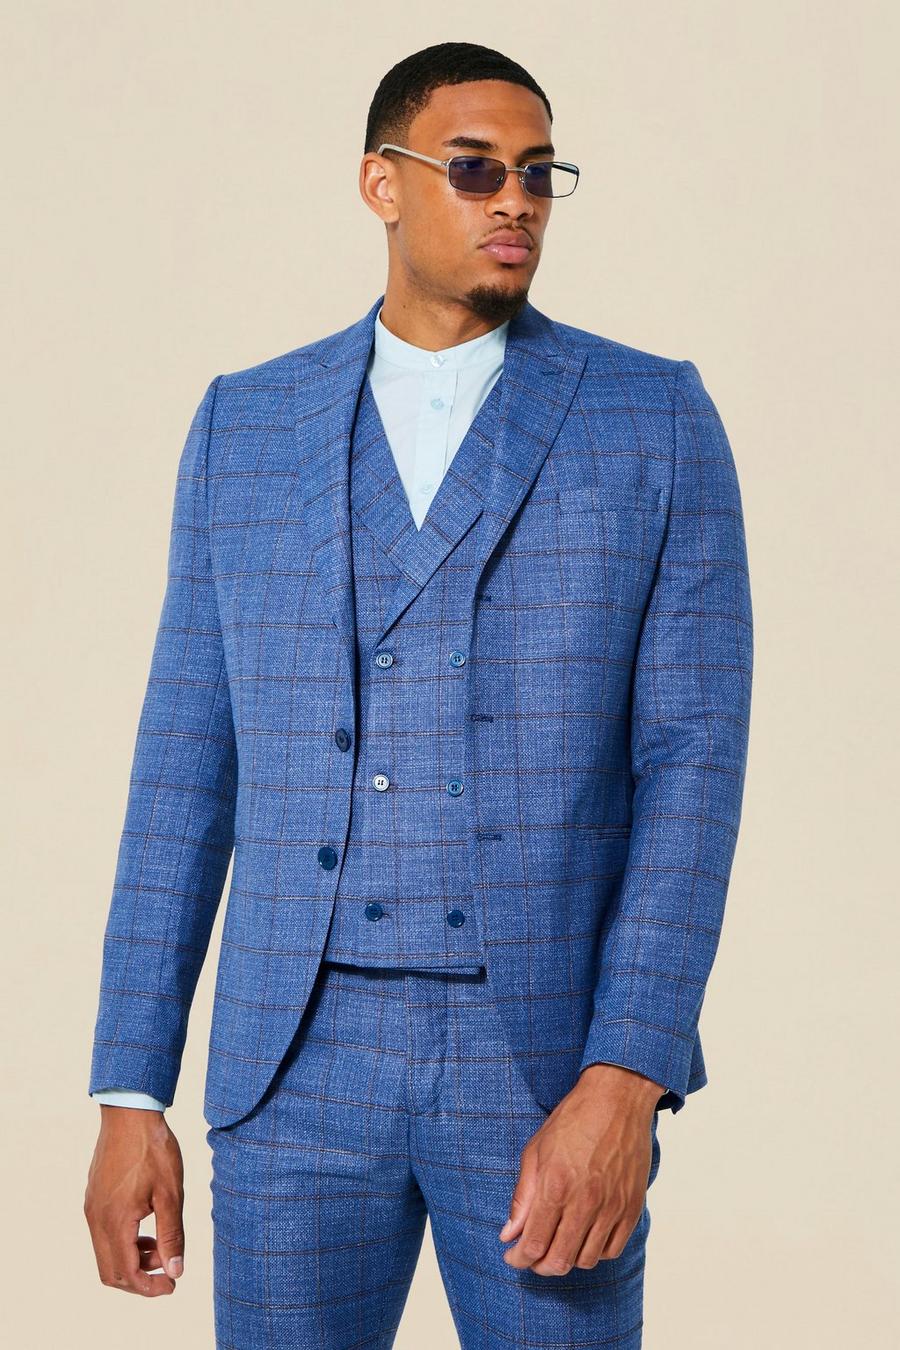 כחול ז'קט חליפה בגזרה צרה עם הדפס משבצות ודש אחד לגברים גבוהים image number 1